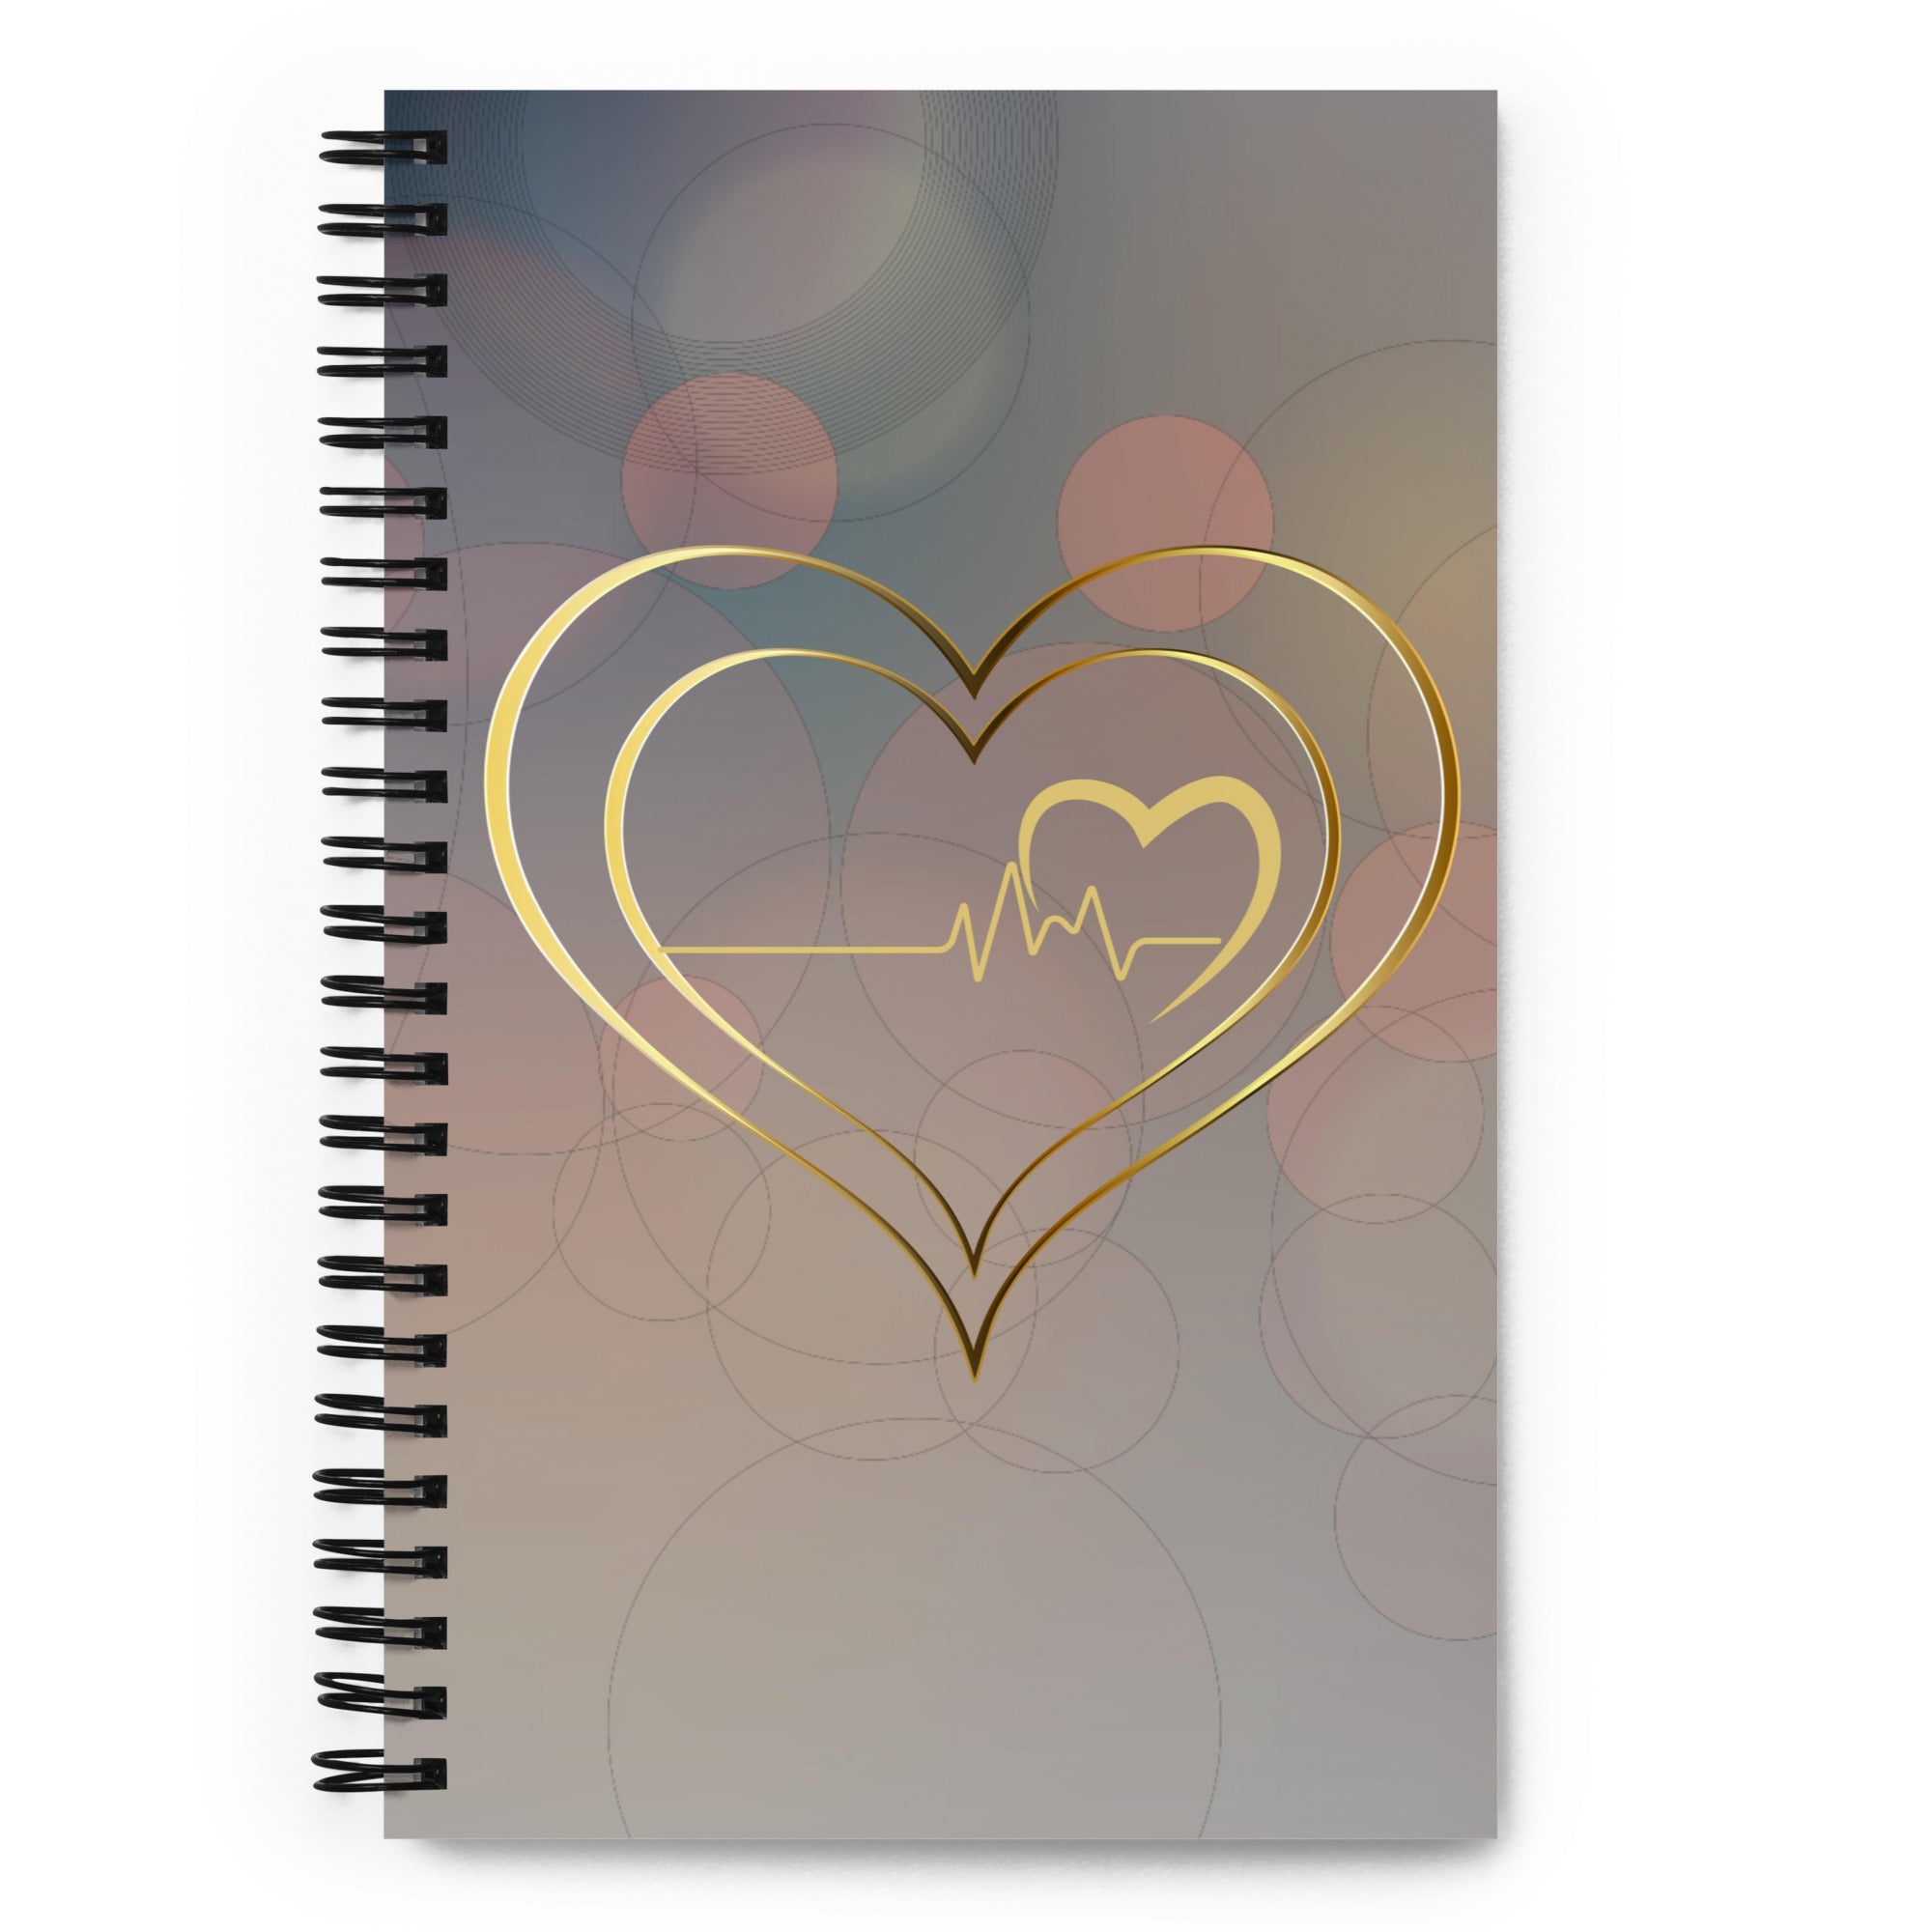 Beating Heart Spiral notebook